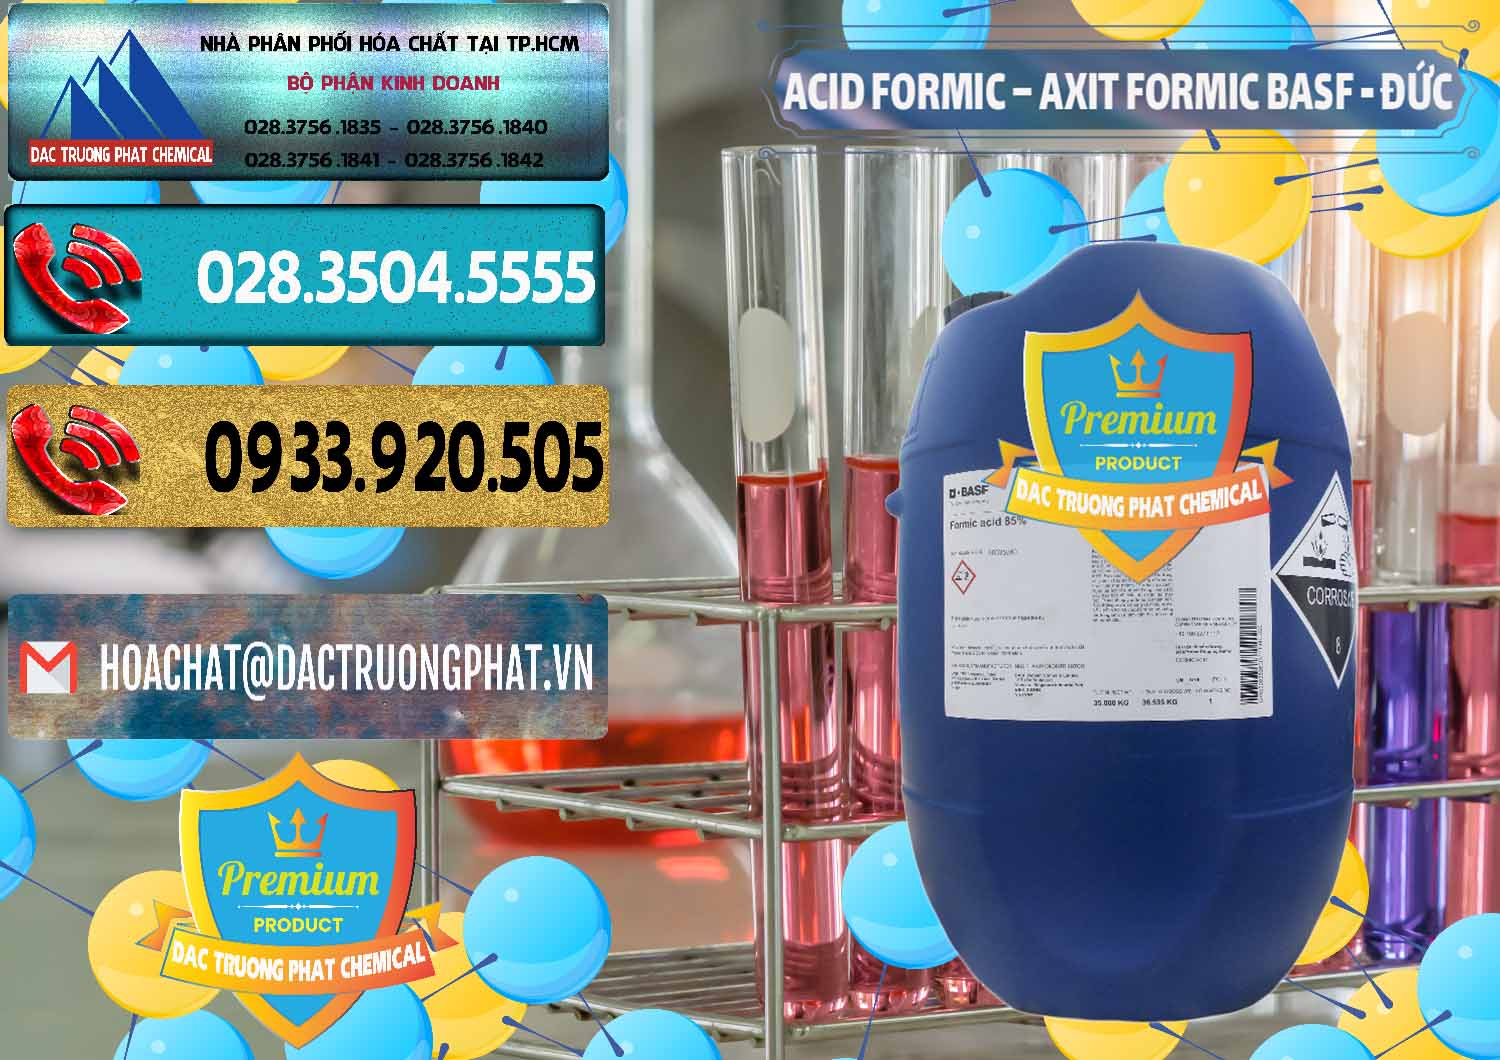 Cty chuyên bán _ cung ứng Acid Formic - Axit Formic BASF Đức Germany - 0028 - Nhập khẩu - cung cấp hóa chất tại TP.HCM - hoachatdetnhuom.com